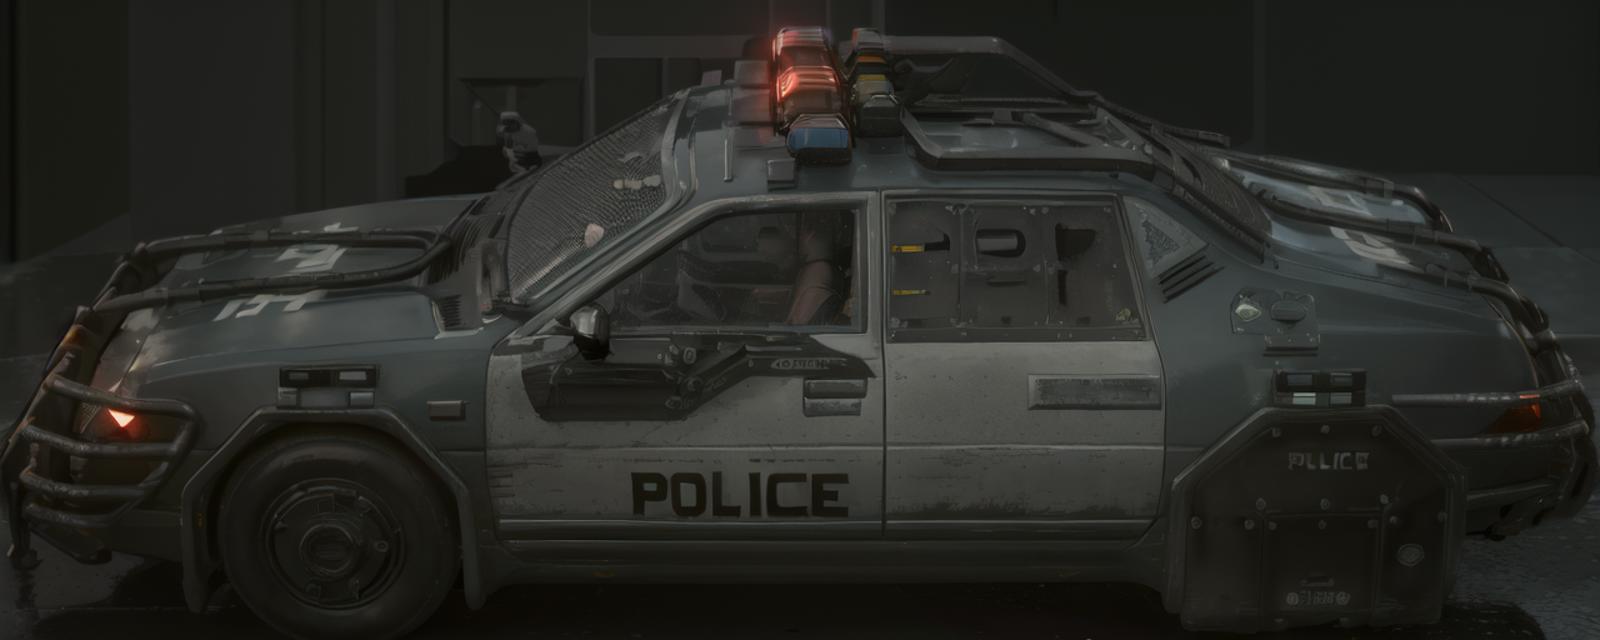 Cyberpunk 2077 NCPD Car (Hella EC-H I860 Enforcer) image by ehowton